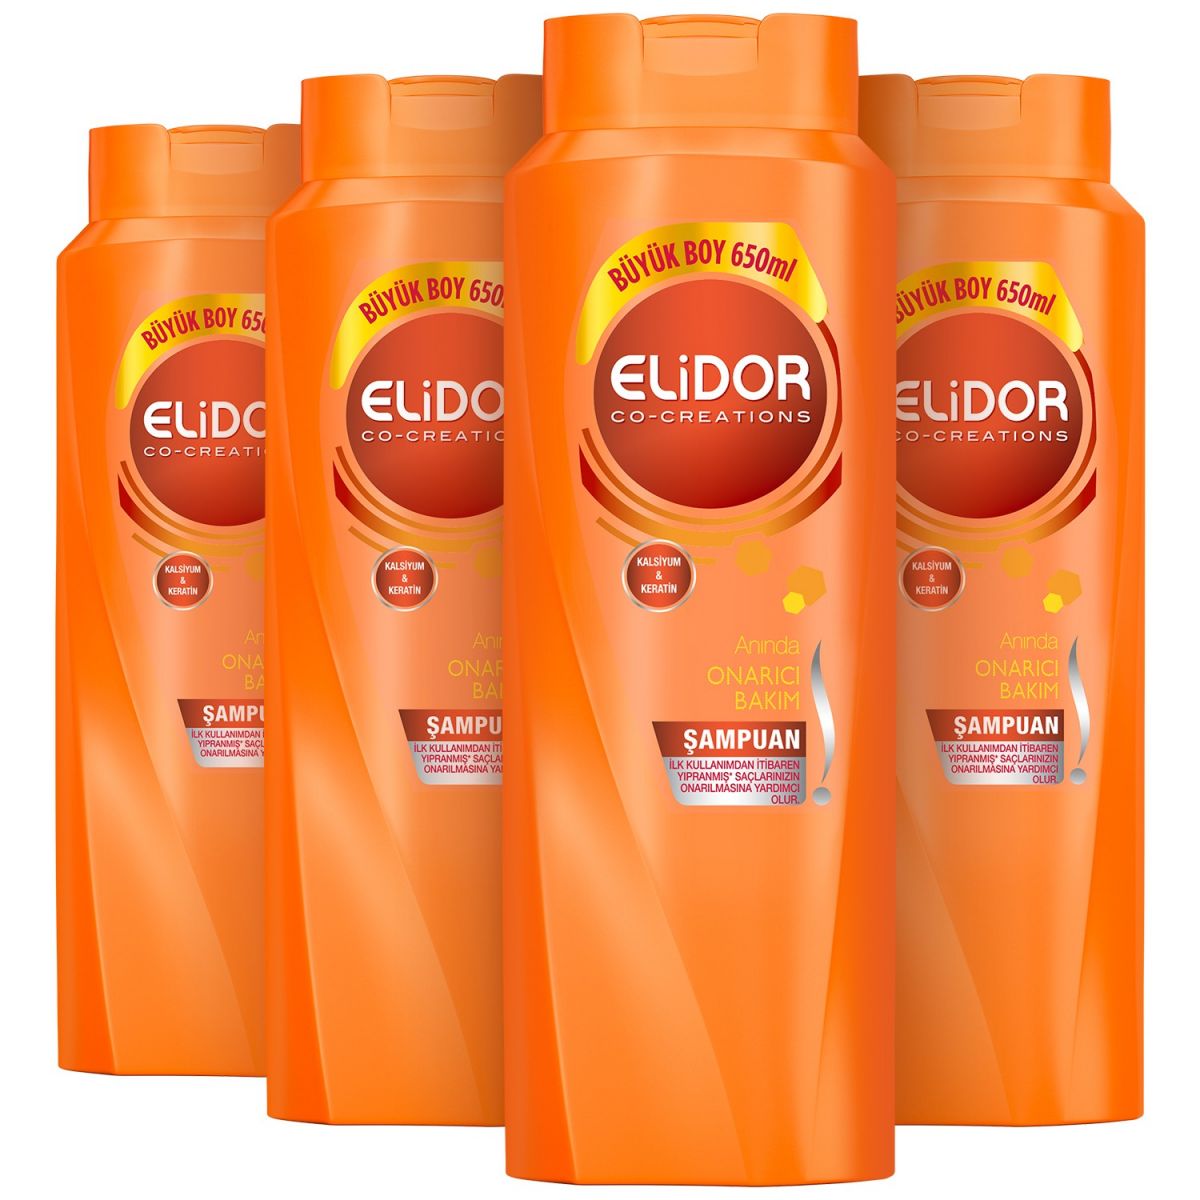 Elidor Anında Onarıcı Bakım Saç Bakım Şampuanı 650 ml 4'lü Fırsat paketi